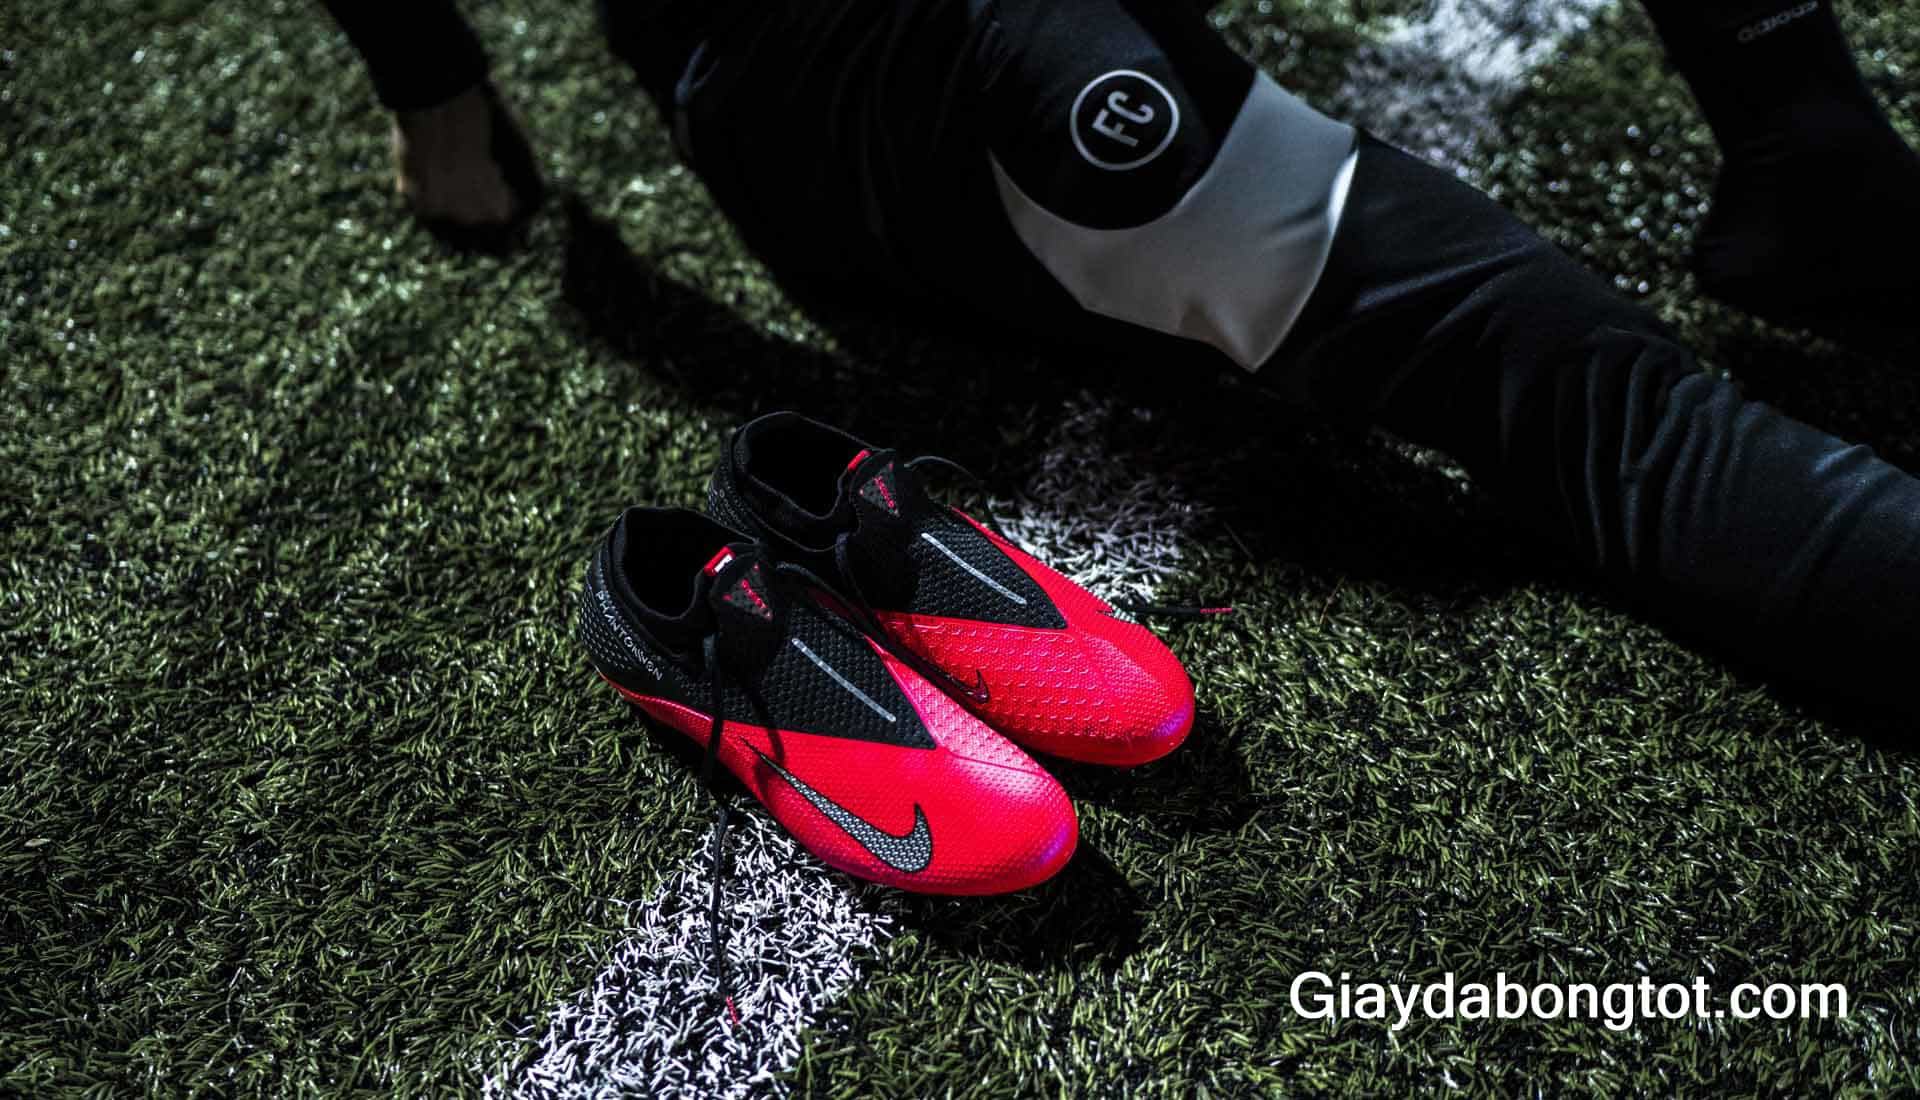 Giới thiệu giày bóng đá Nike Phantom VSN 2 thế hệ mới 2020